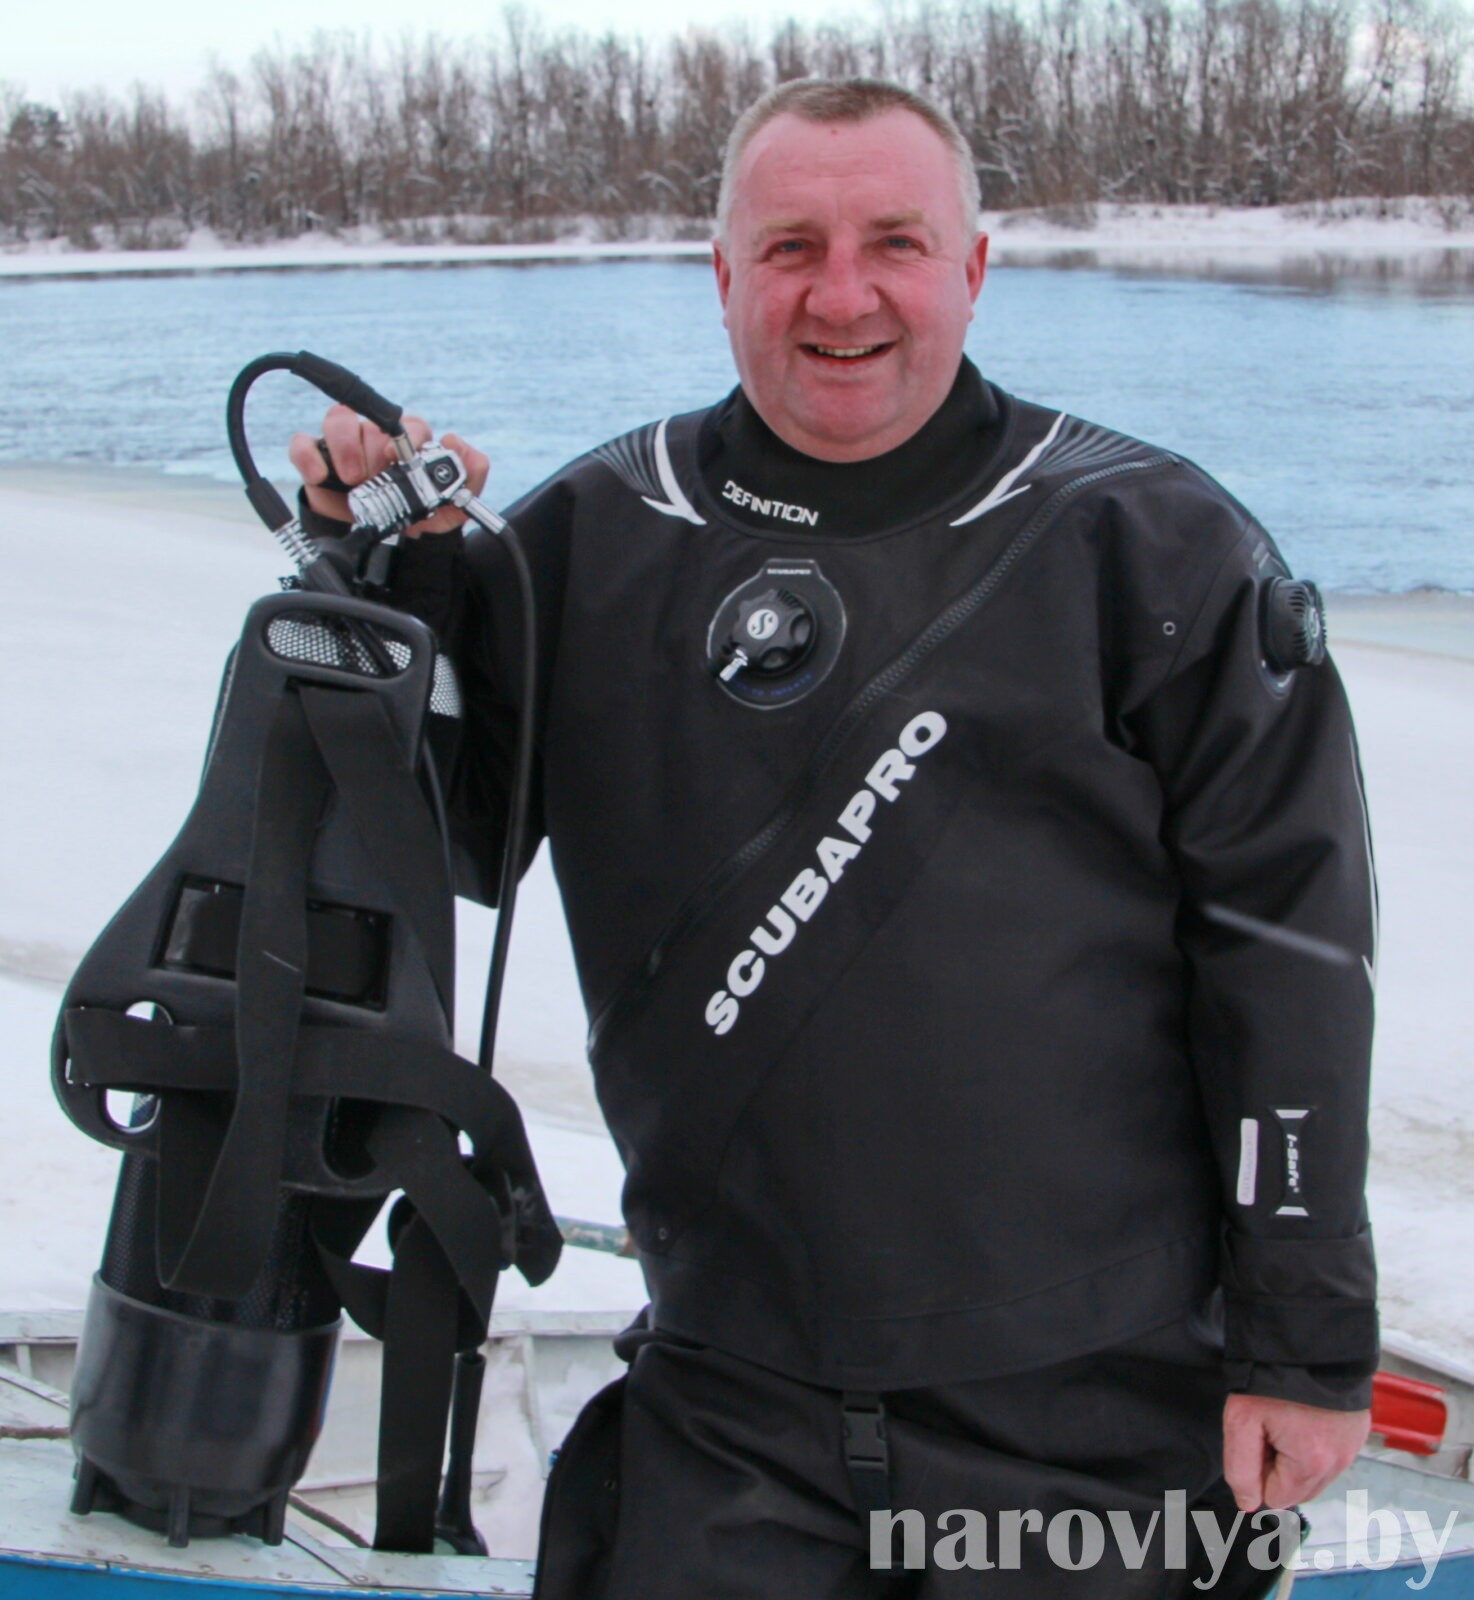 23 года трудится в Наровлянской спасательной станции водолаз-спасатель Сергей ПОПЕЛ